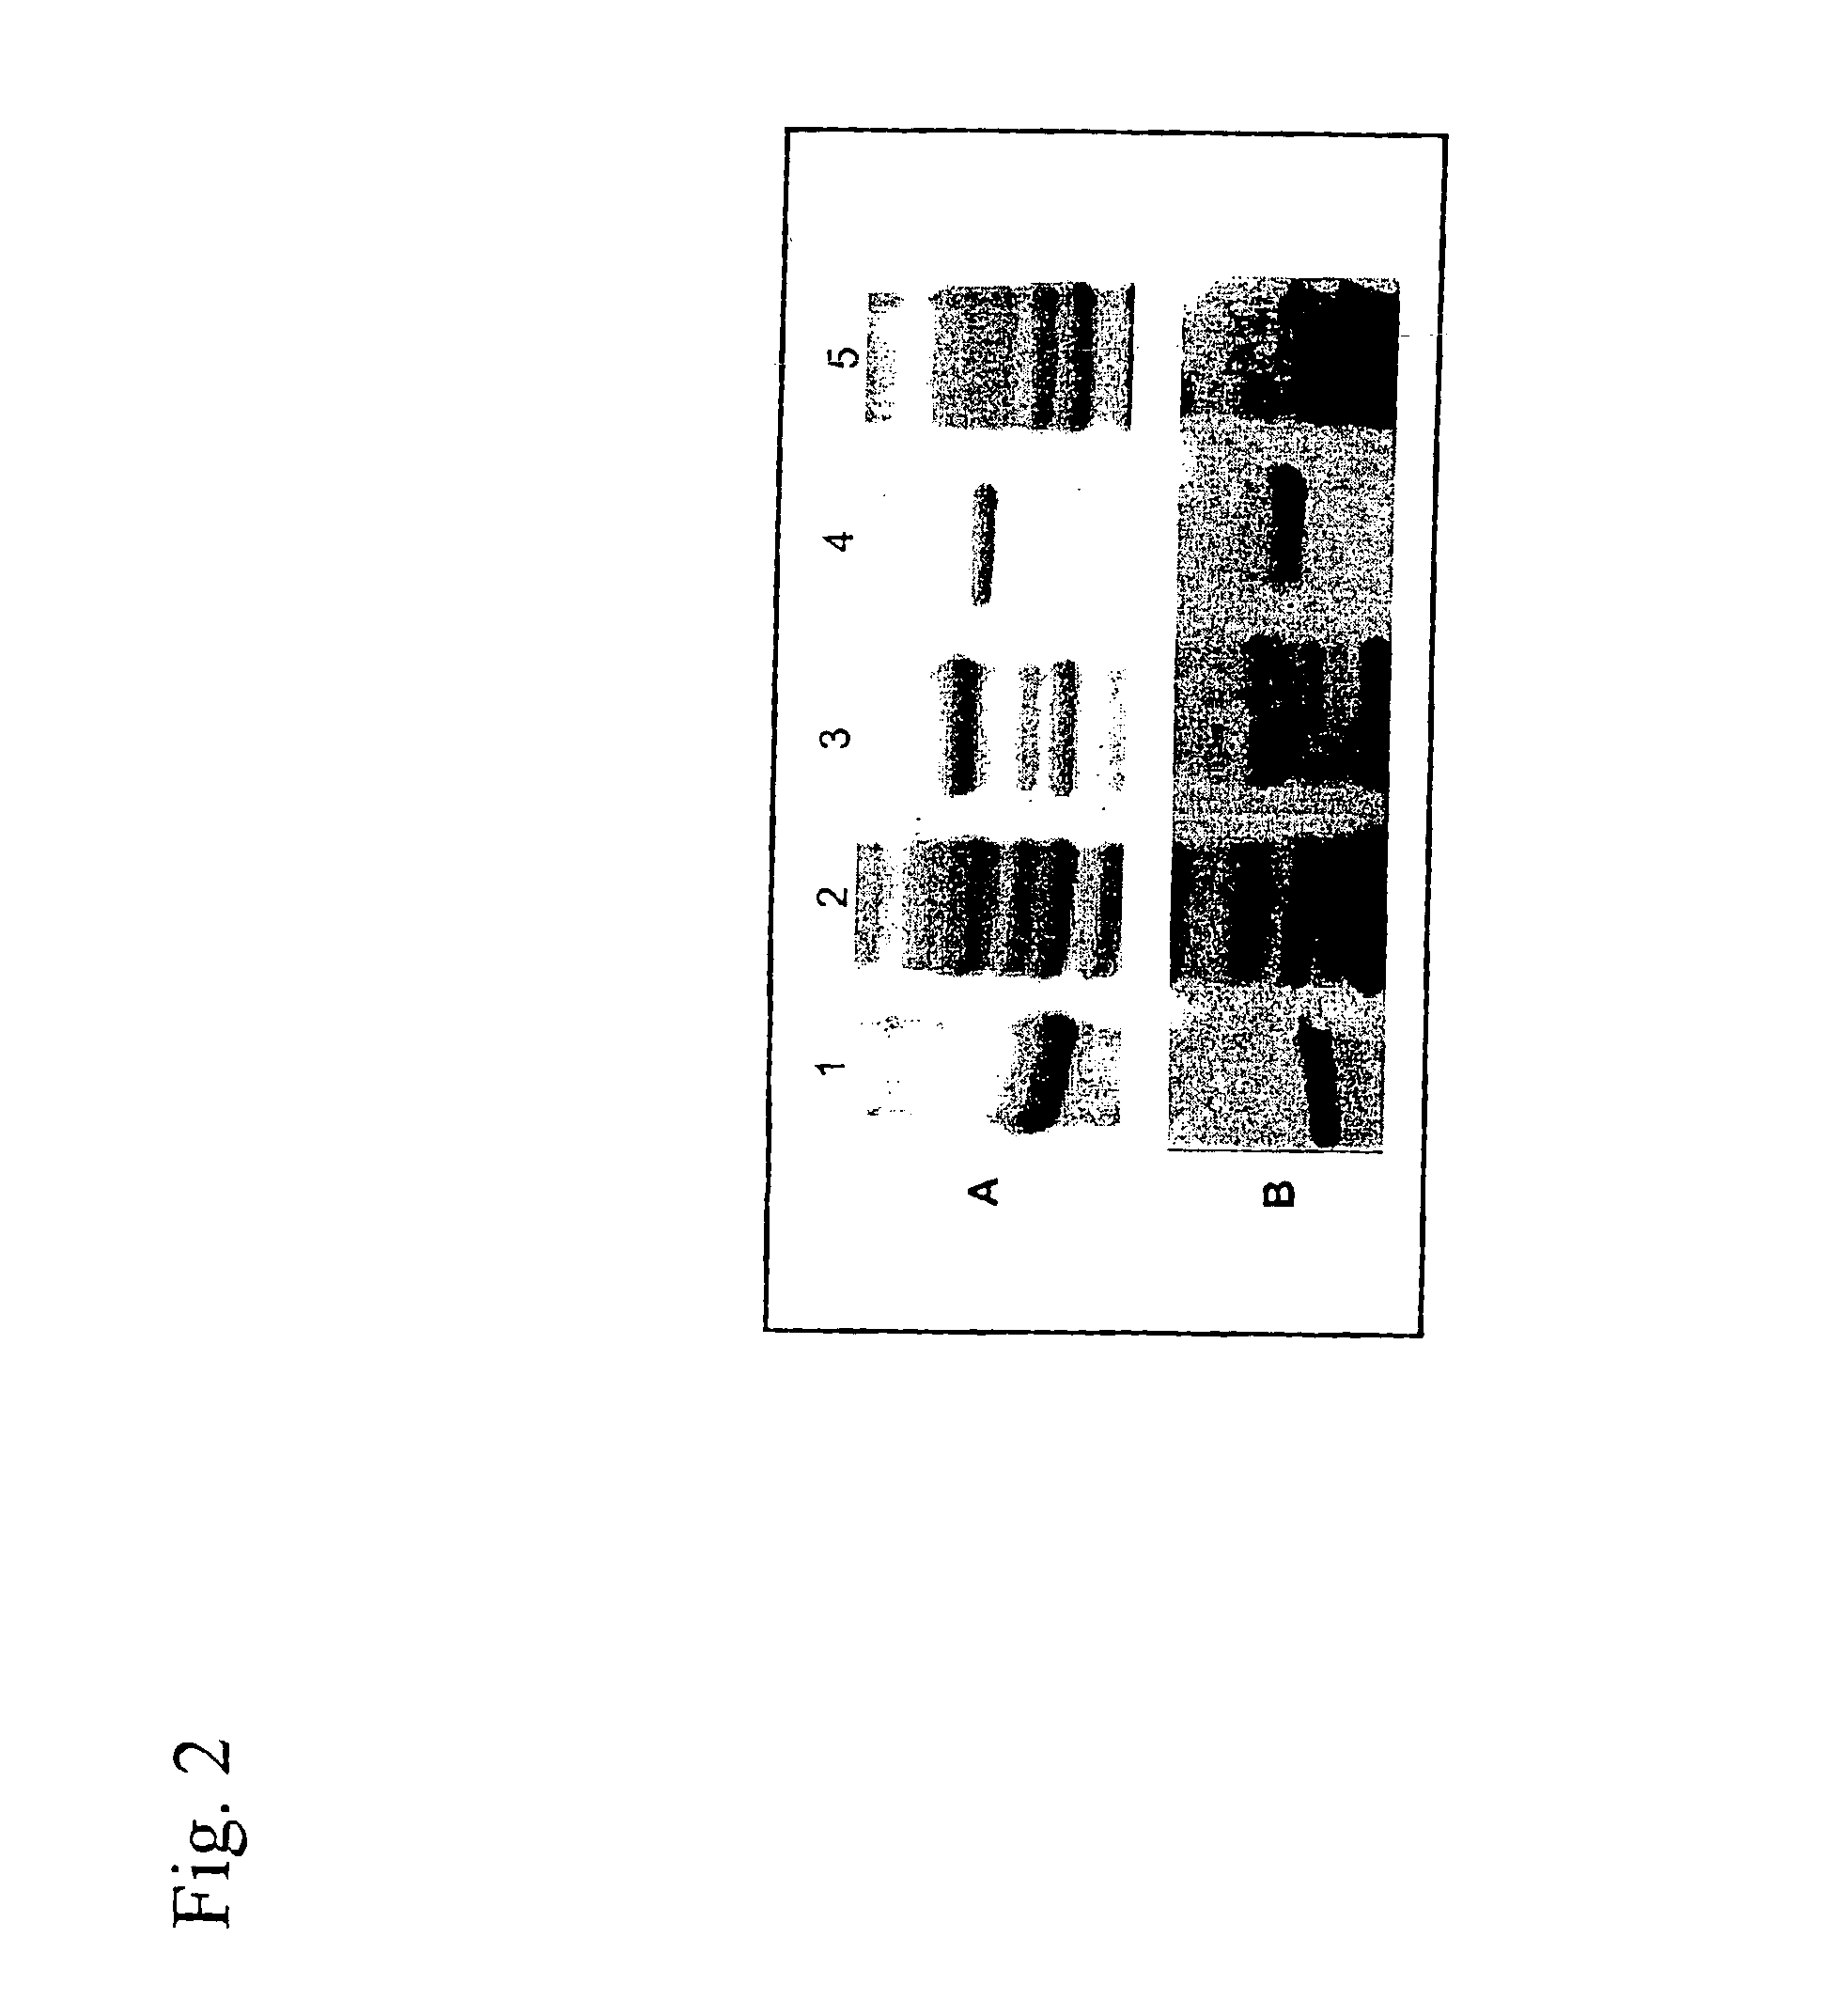 Lawsonia intracellularis vaccine